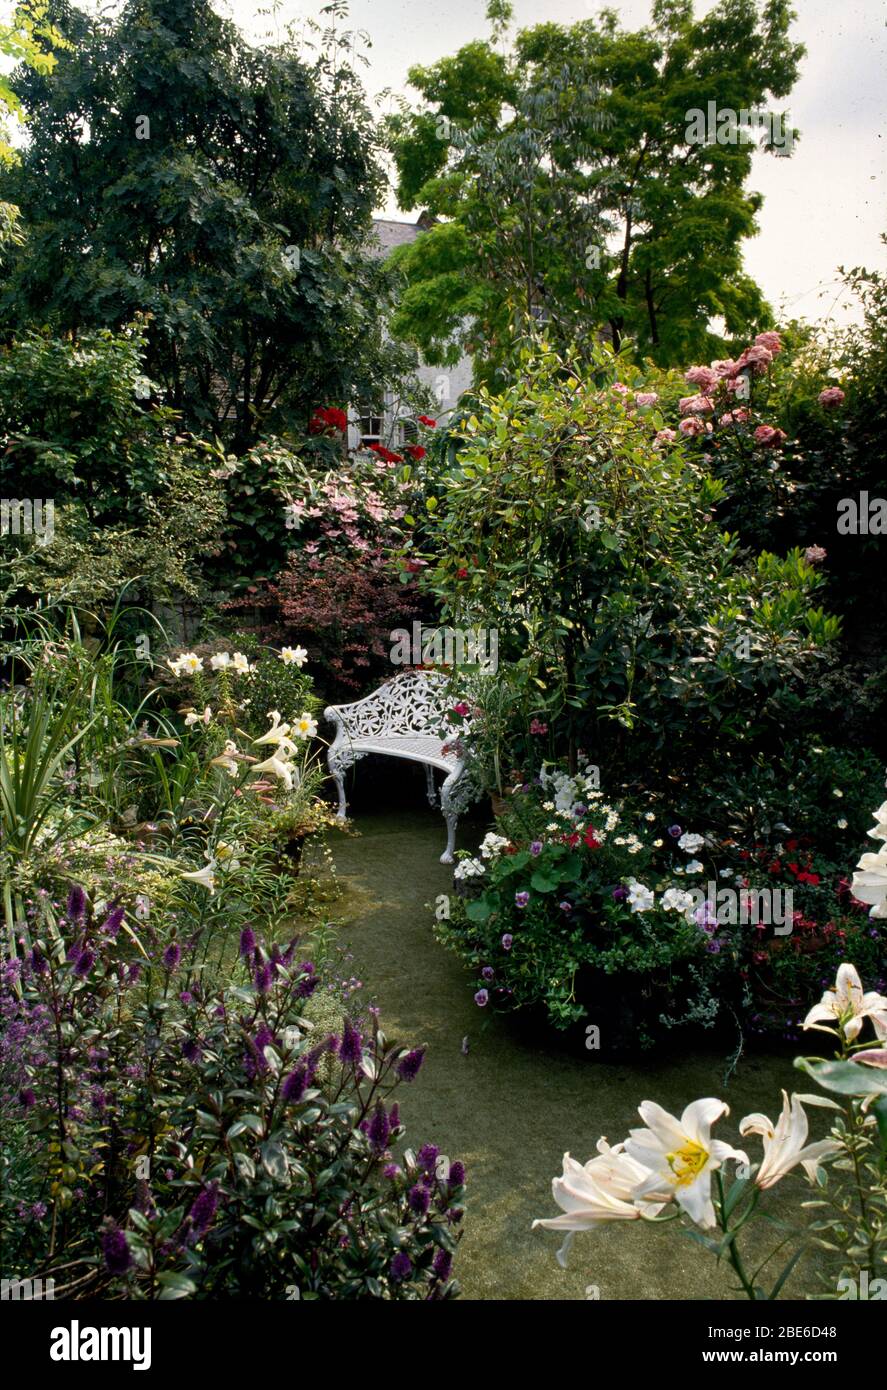 Banco blanco de hierro jardín con lirios horrangea, rosas y hebe. Foto de stock